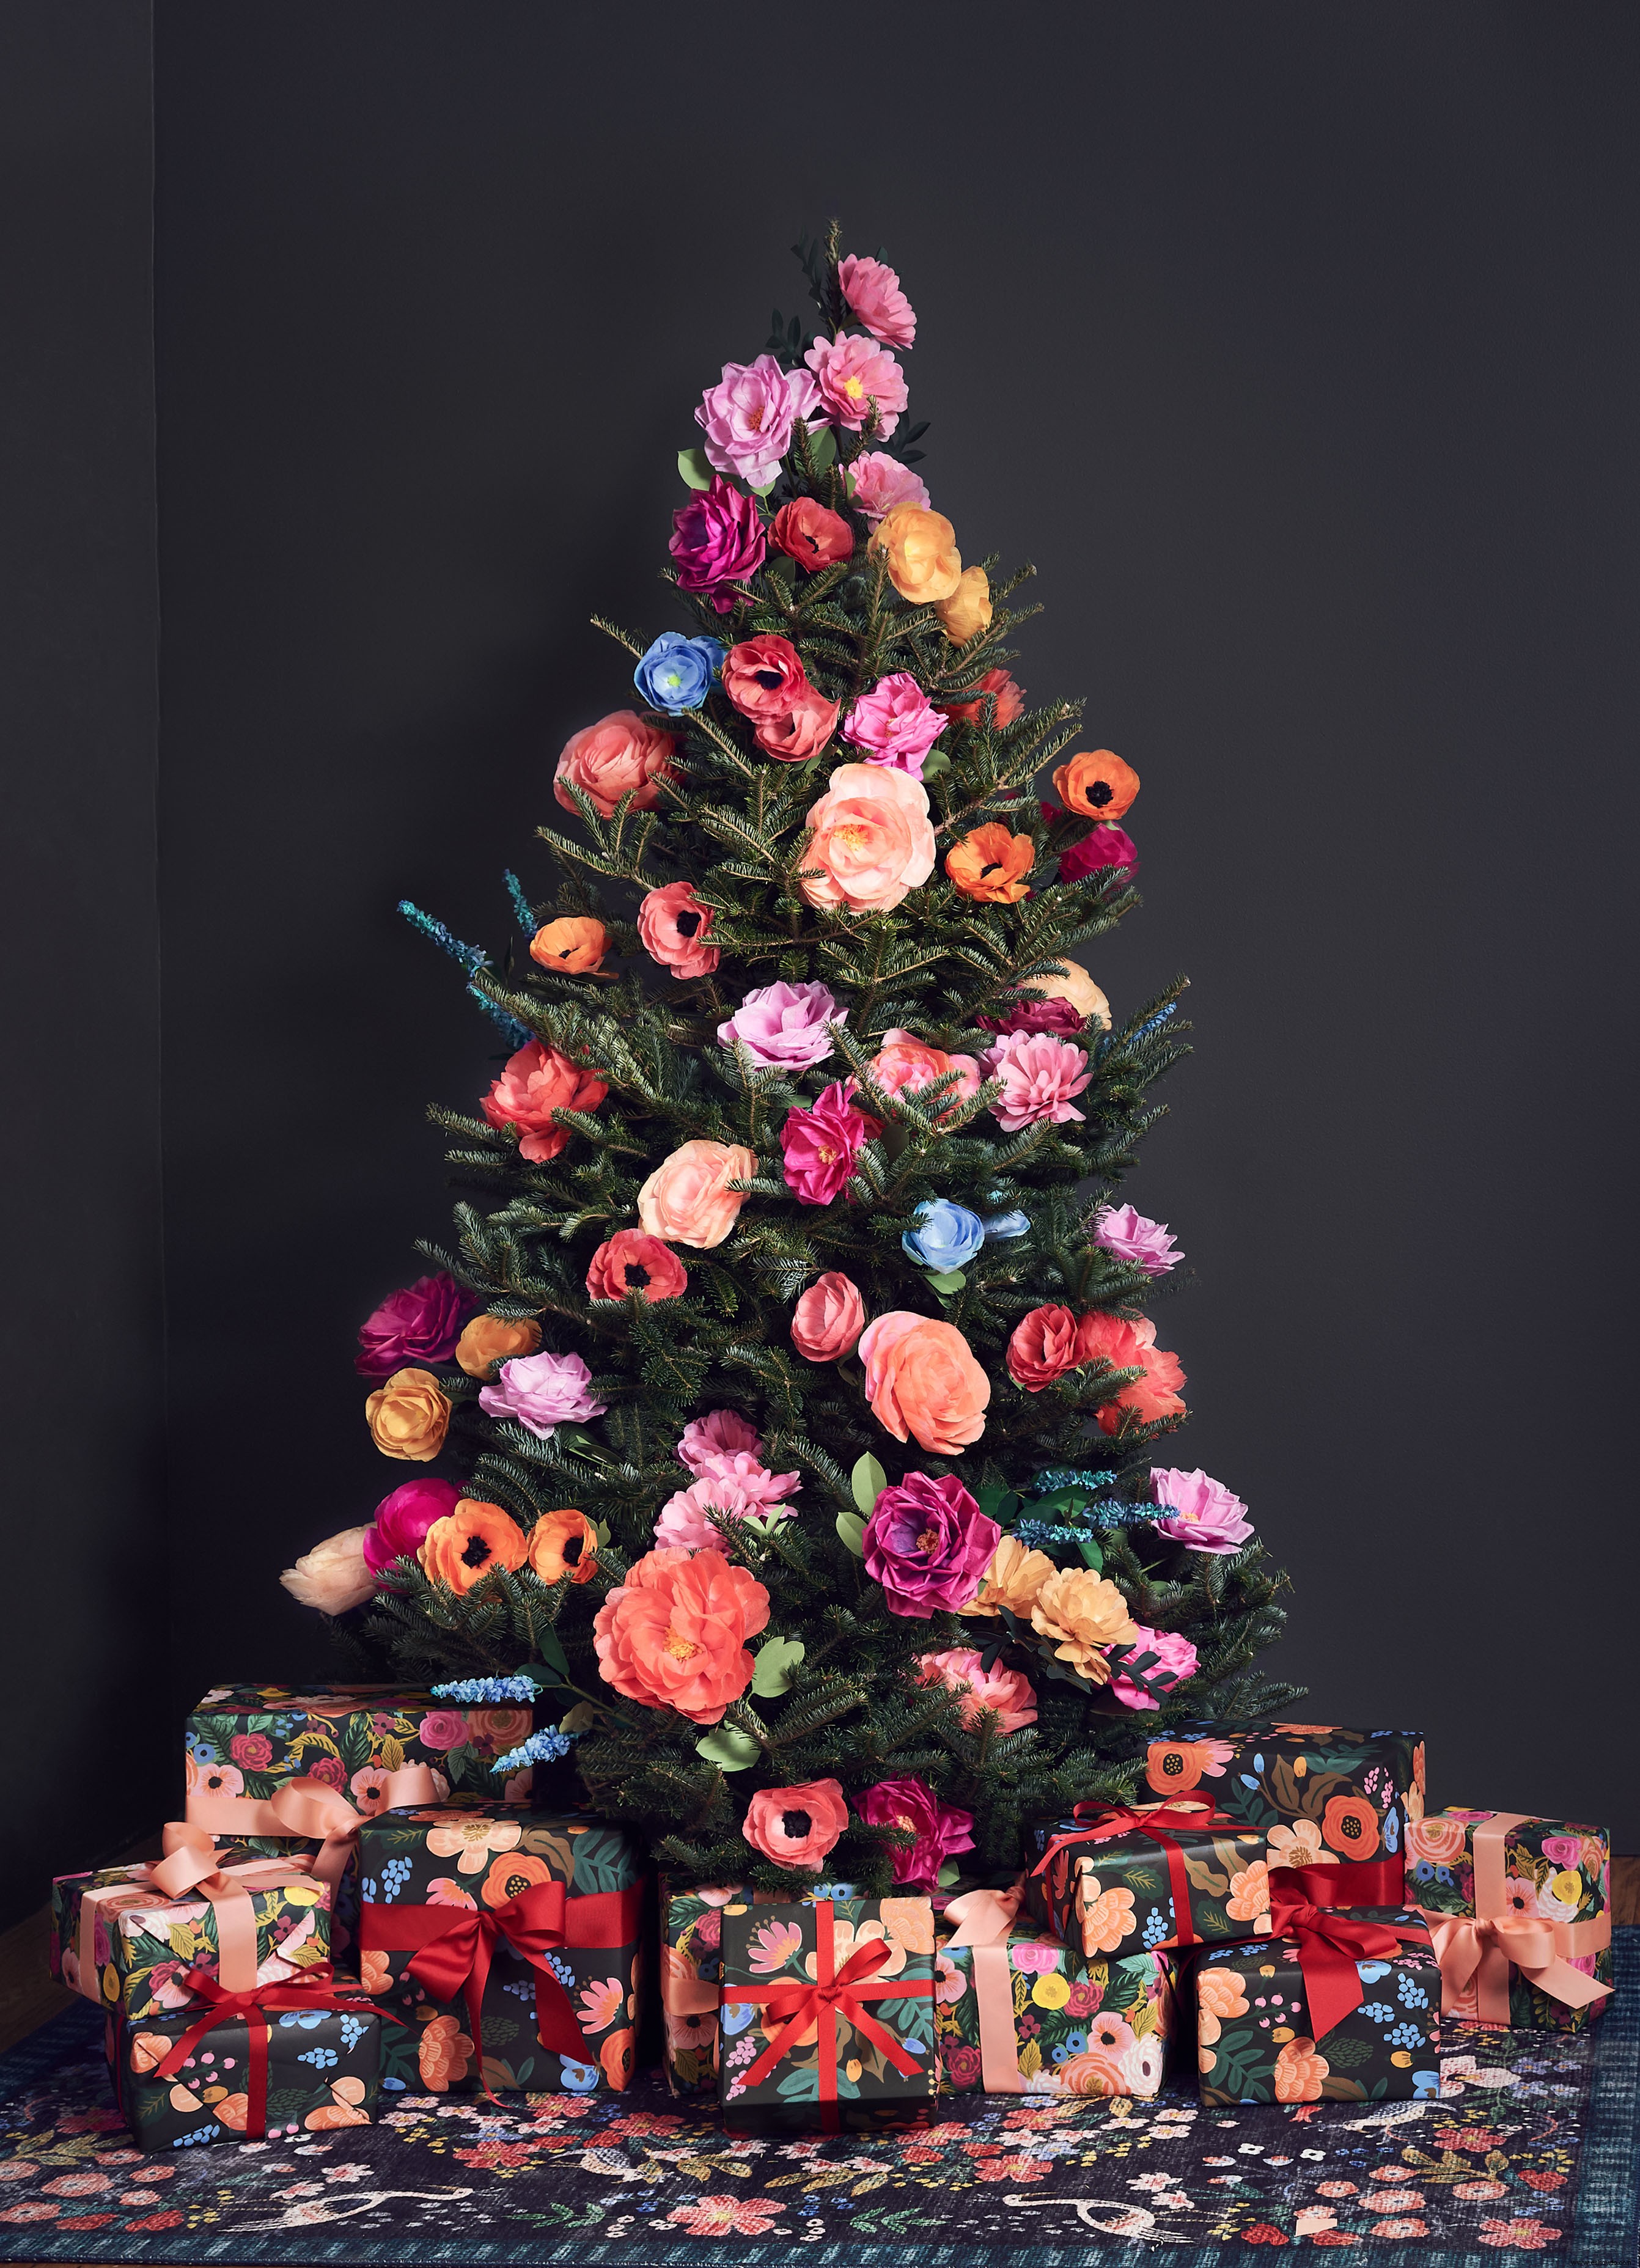 La tendencia floral del árbol de Navidad ha vuelto y las imágenes son impresionantes 